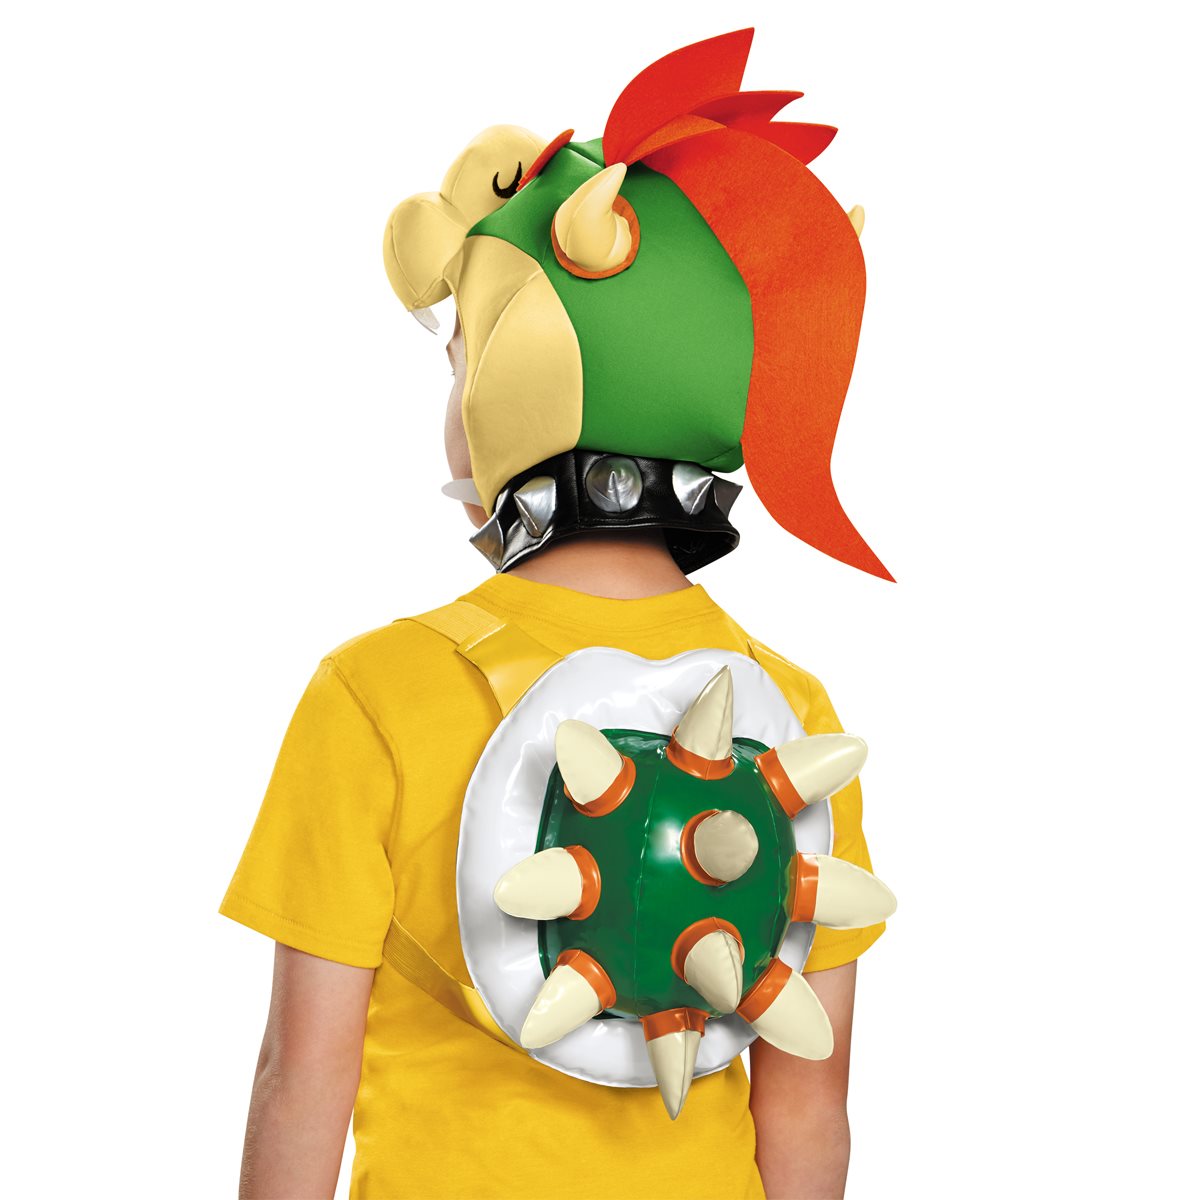 Super Mario Bros. Bowser Costumes 